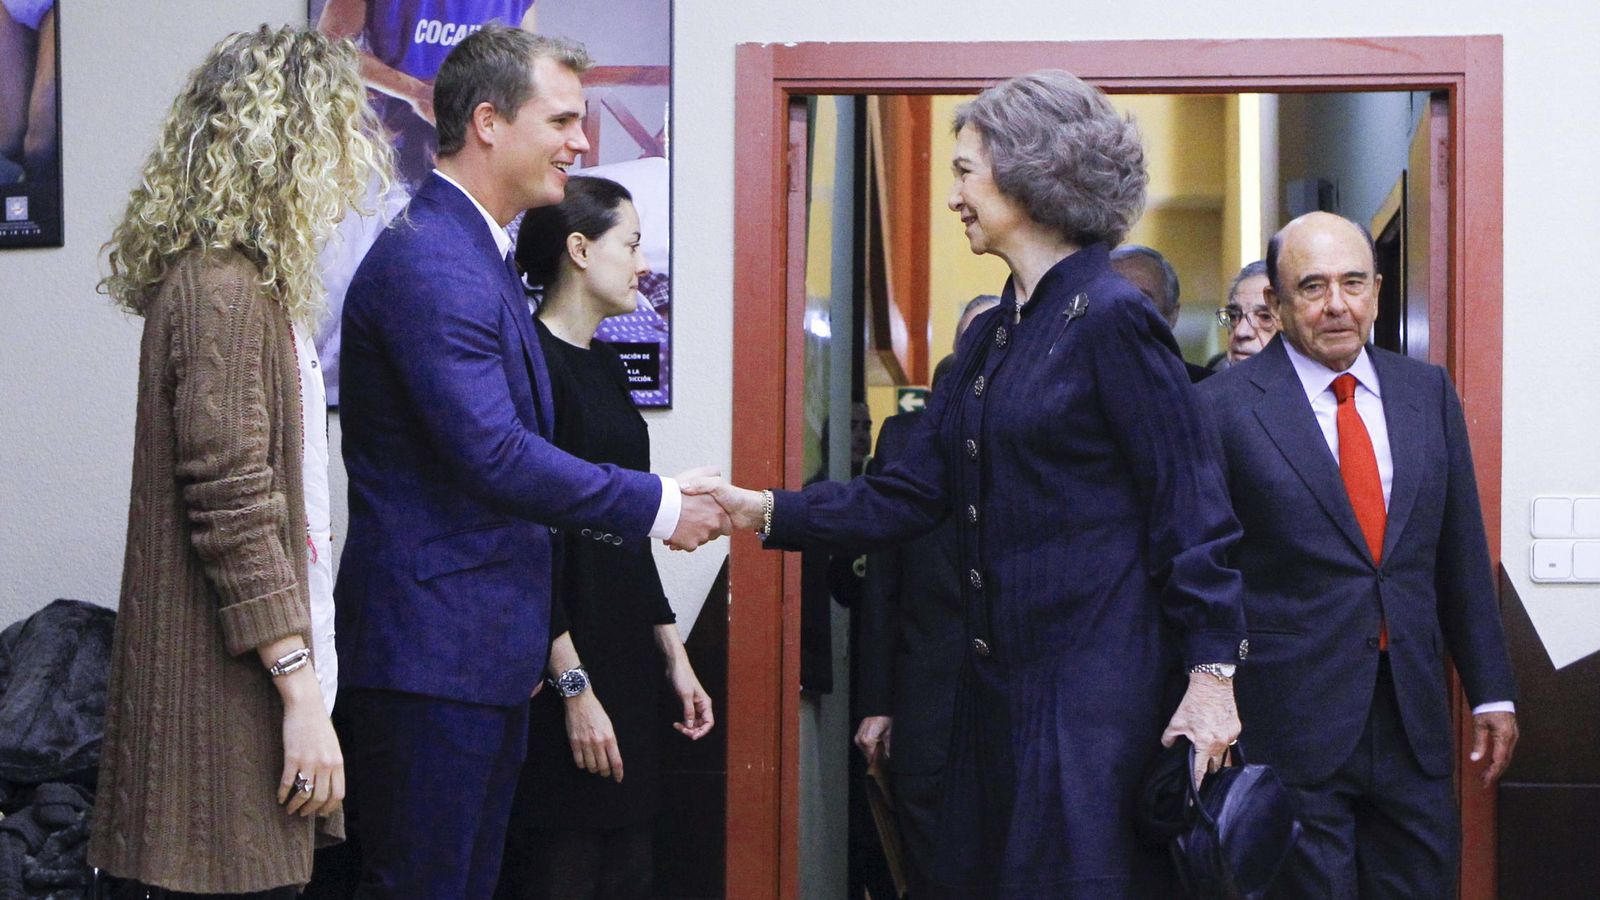 La reina emérita Sofía saluda al fundador de Tuenti, Zaryn Dentzel, en un evento celebrado en 2013 al que también asistieron figuras destacadas como Emilio Botín o César Alierta. (EFE)